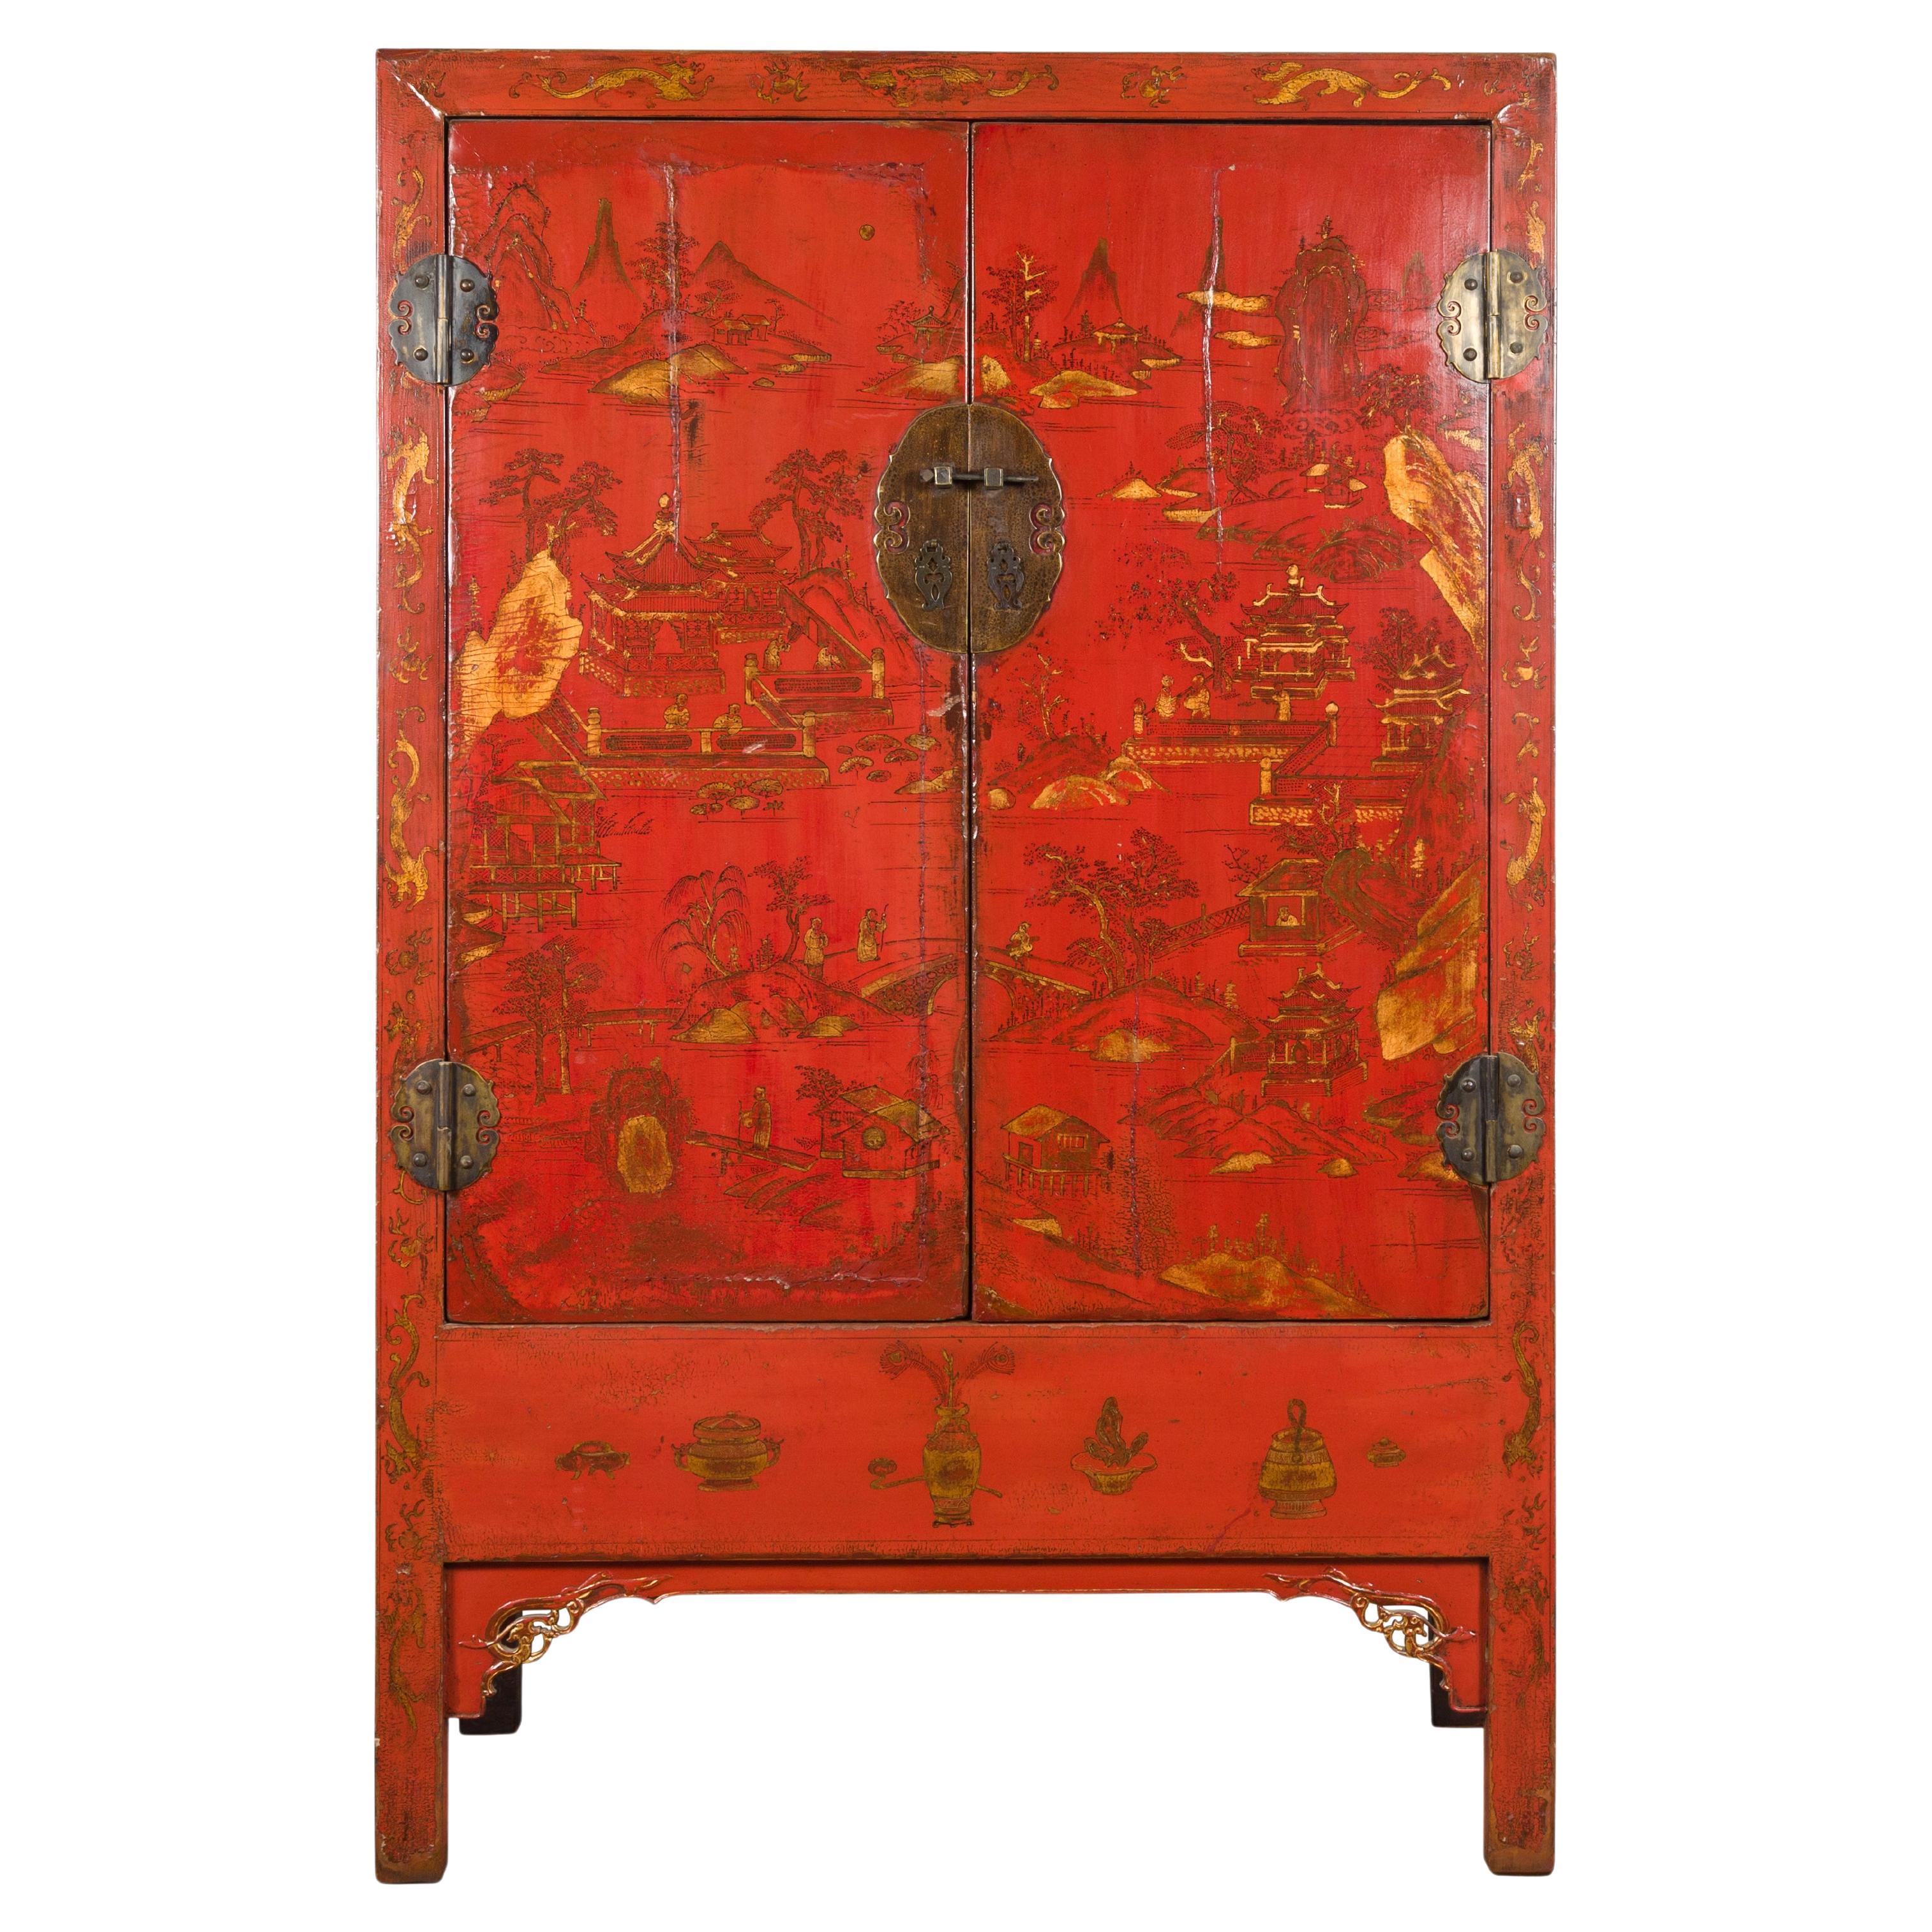 Cabinet peint à la main de la dynastie chinoise Qing du 19ème siècle avec laque rouge d'origine